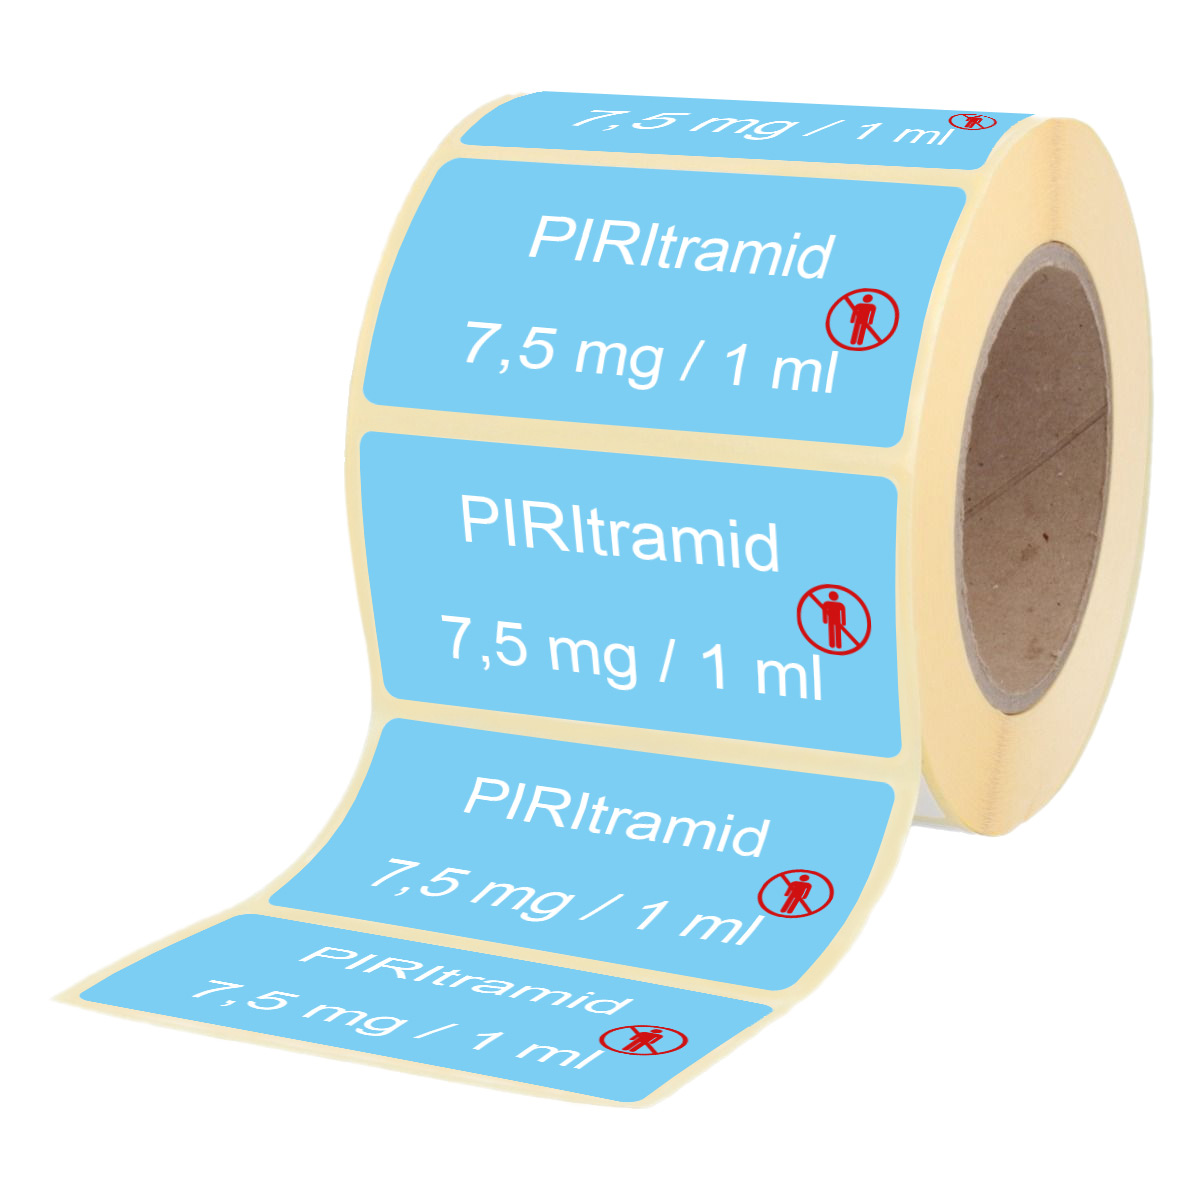 Piritramid 7,5 mg / 1 ml - Etiketten für Brechampullen-513